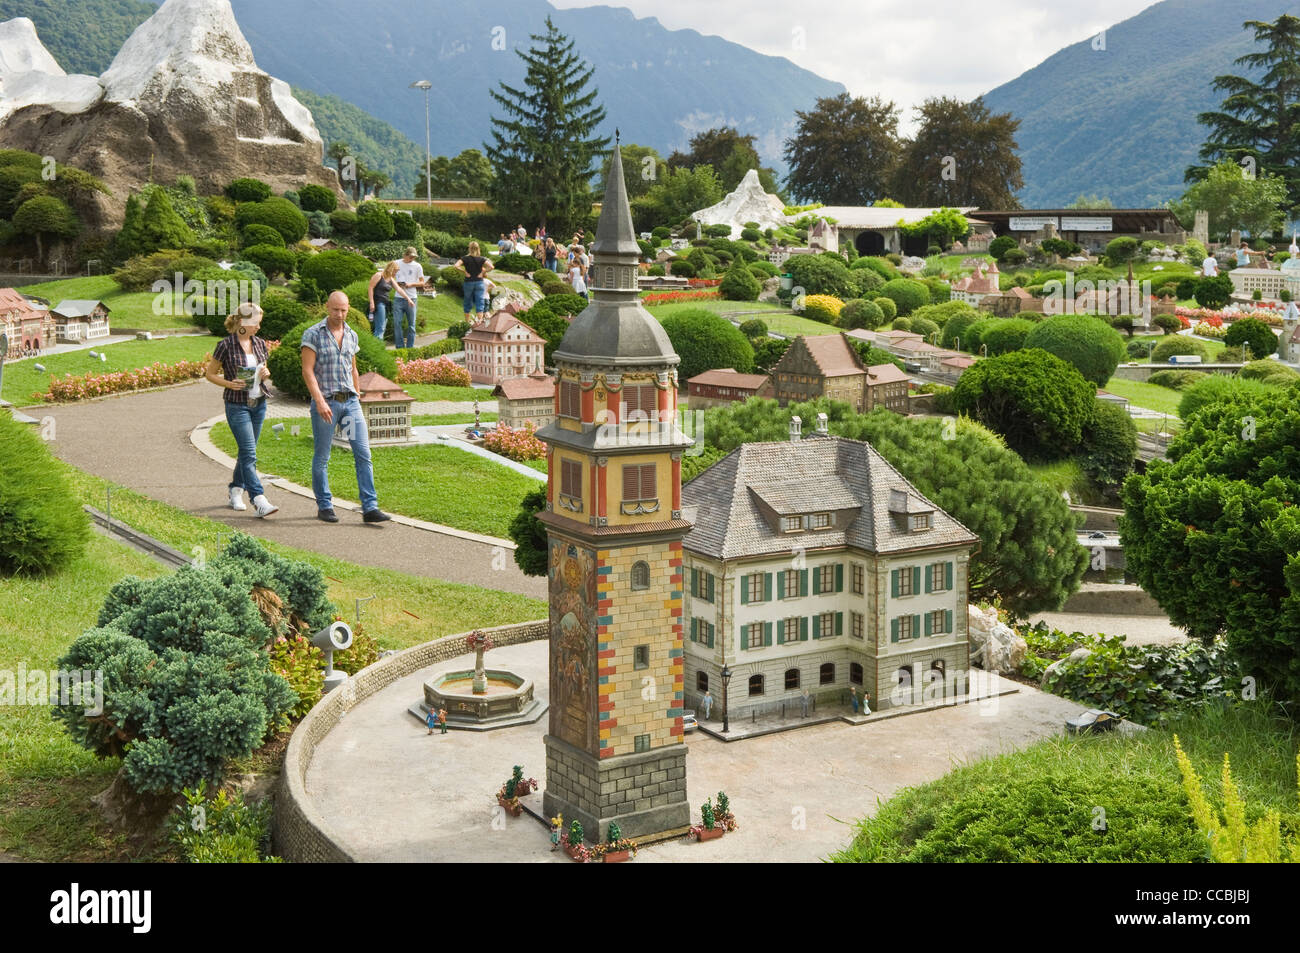 Svizzera in Muniatura, Swissminiatur, Melide, Schweiz Stockfotografie -  Alamy